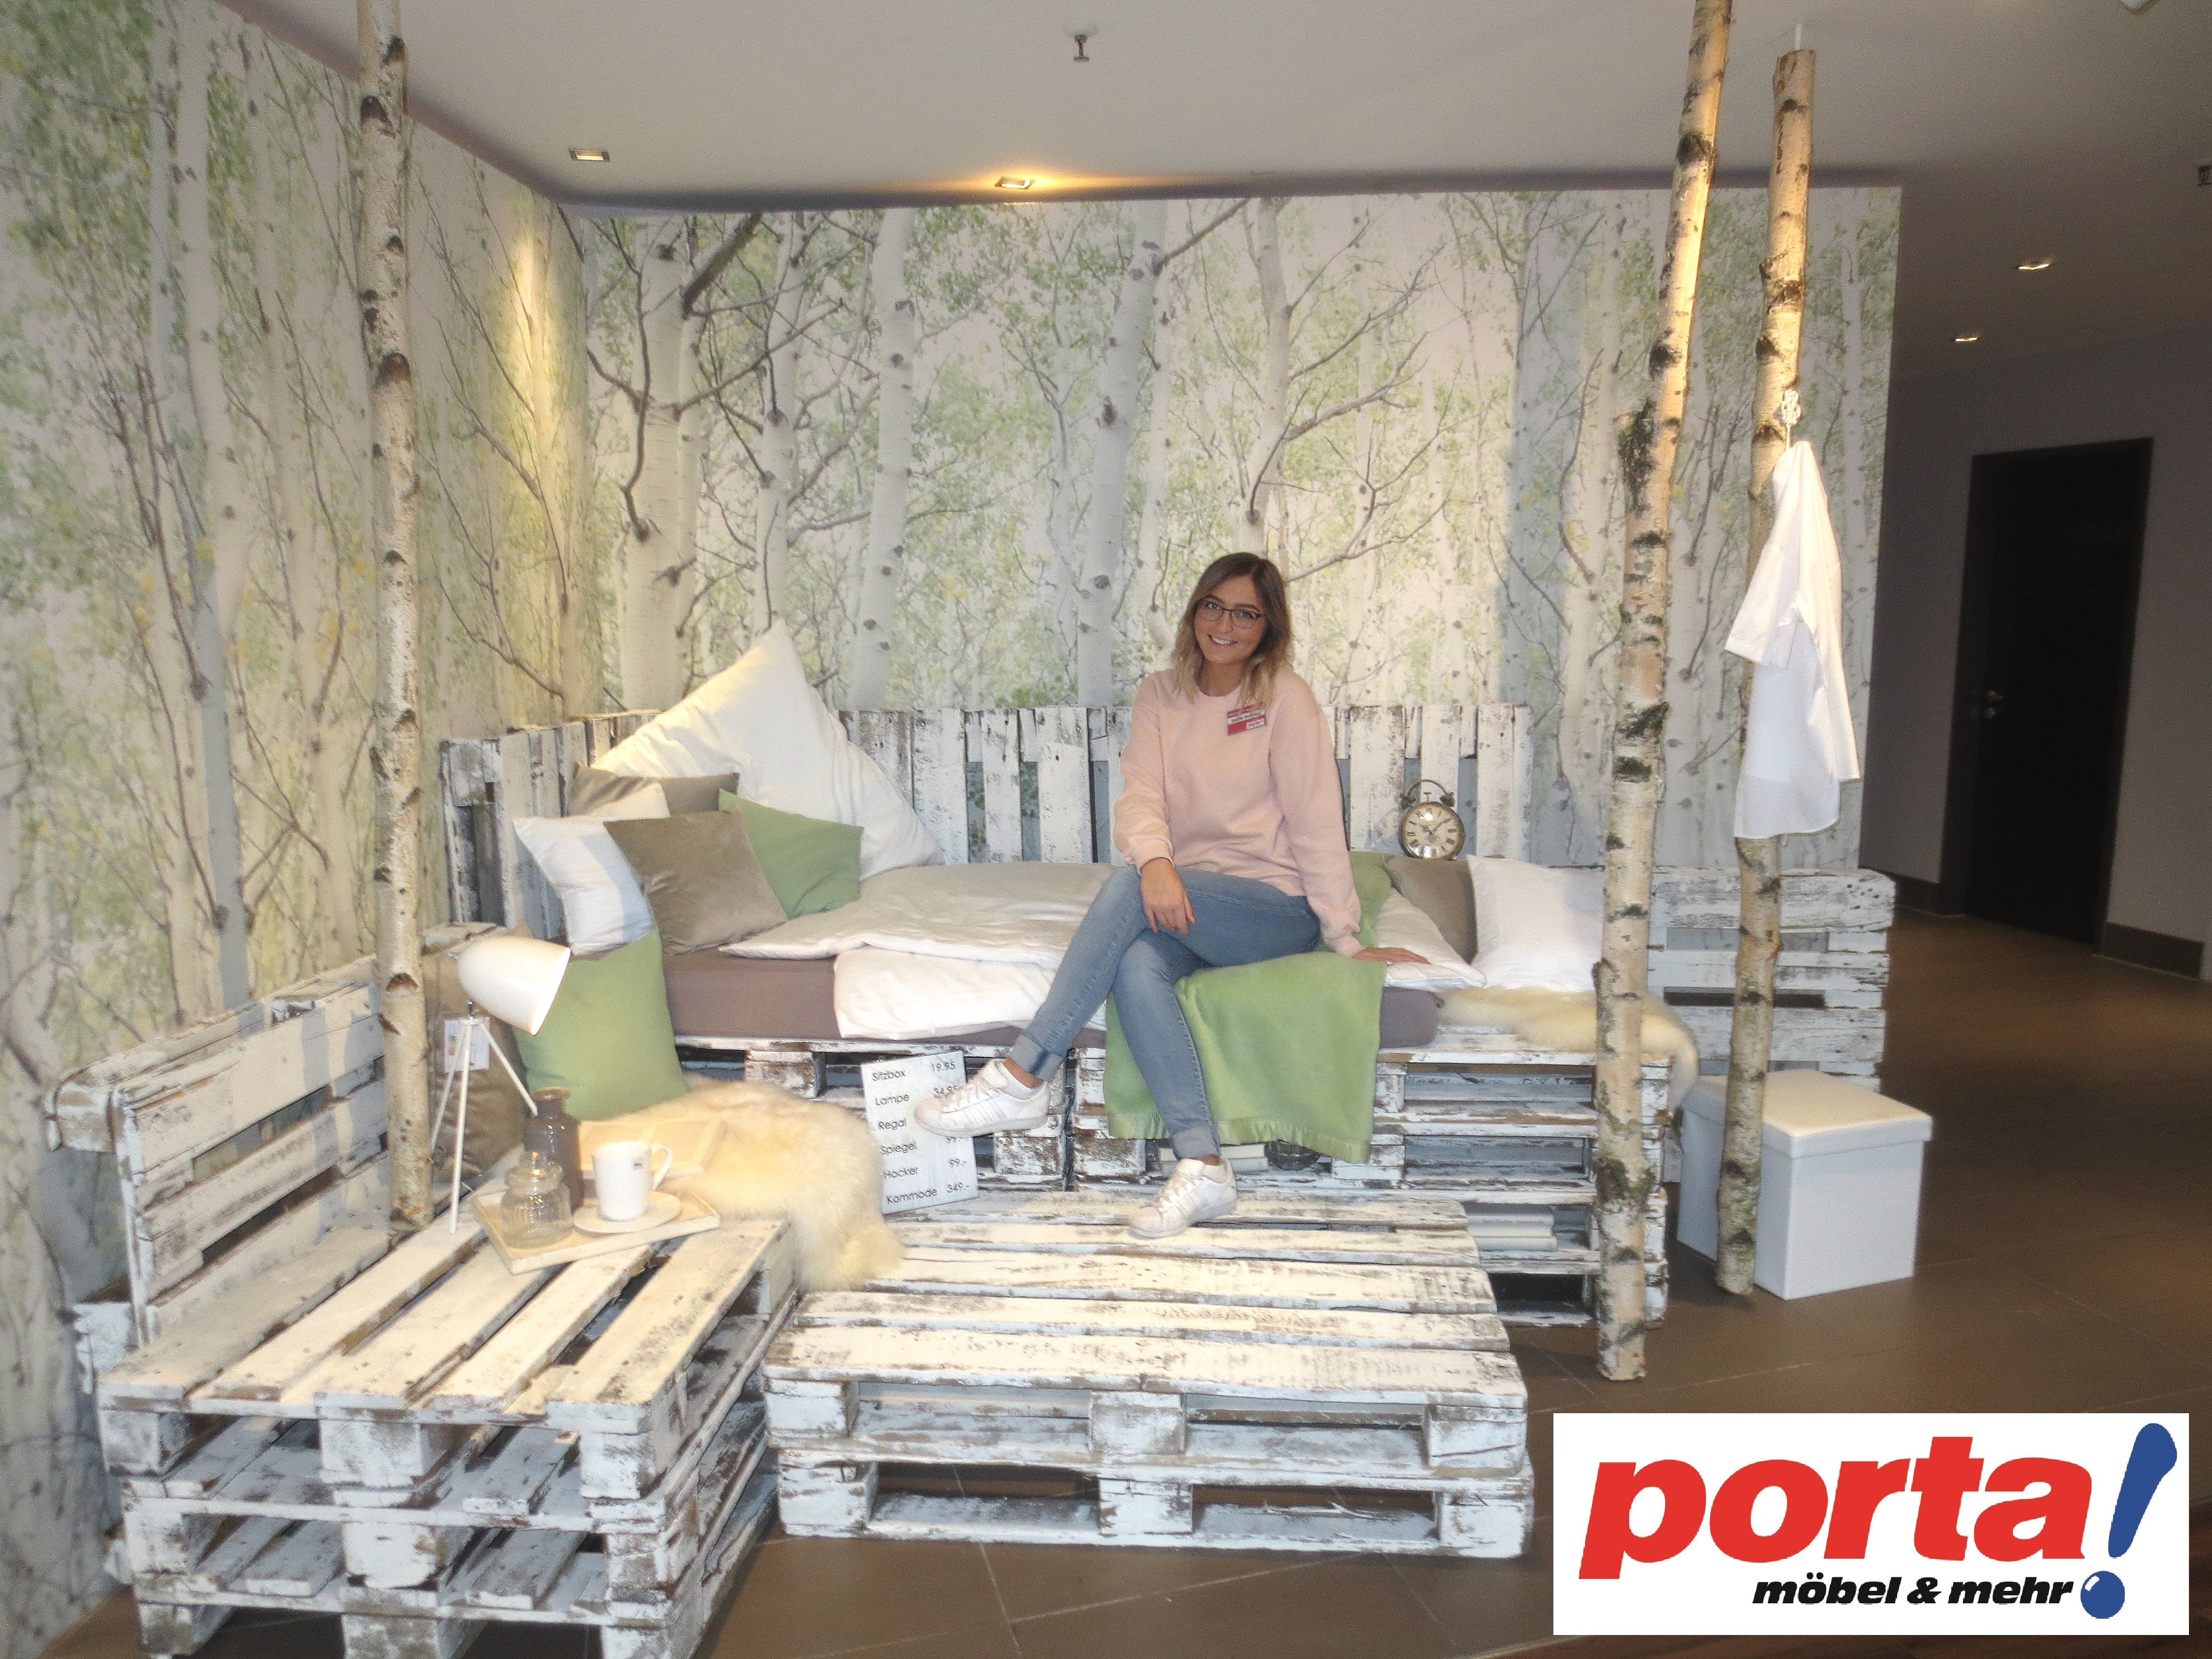 Sabina erzählt über ihre Ausbildung bei Porta Möbel